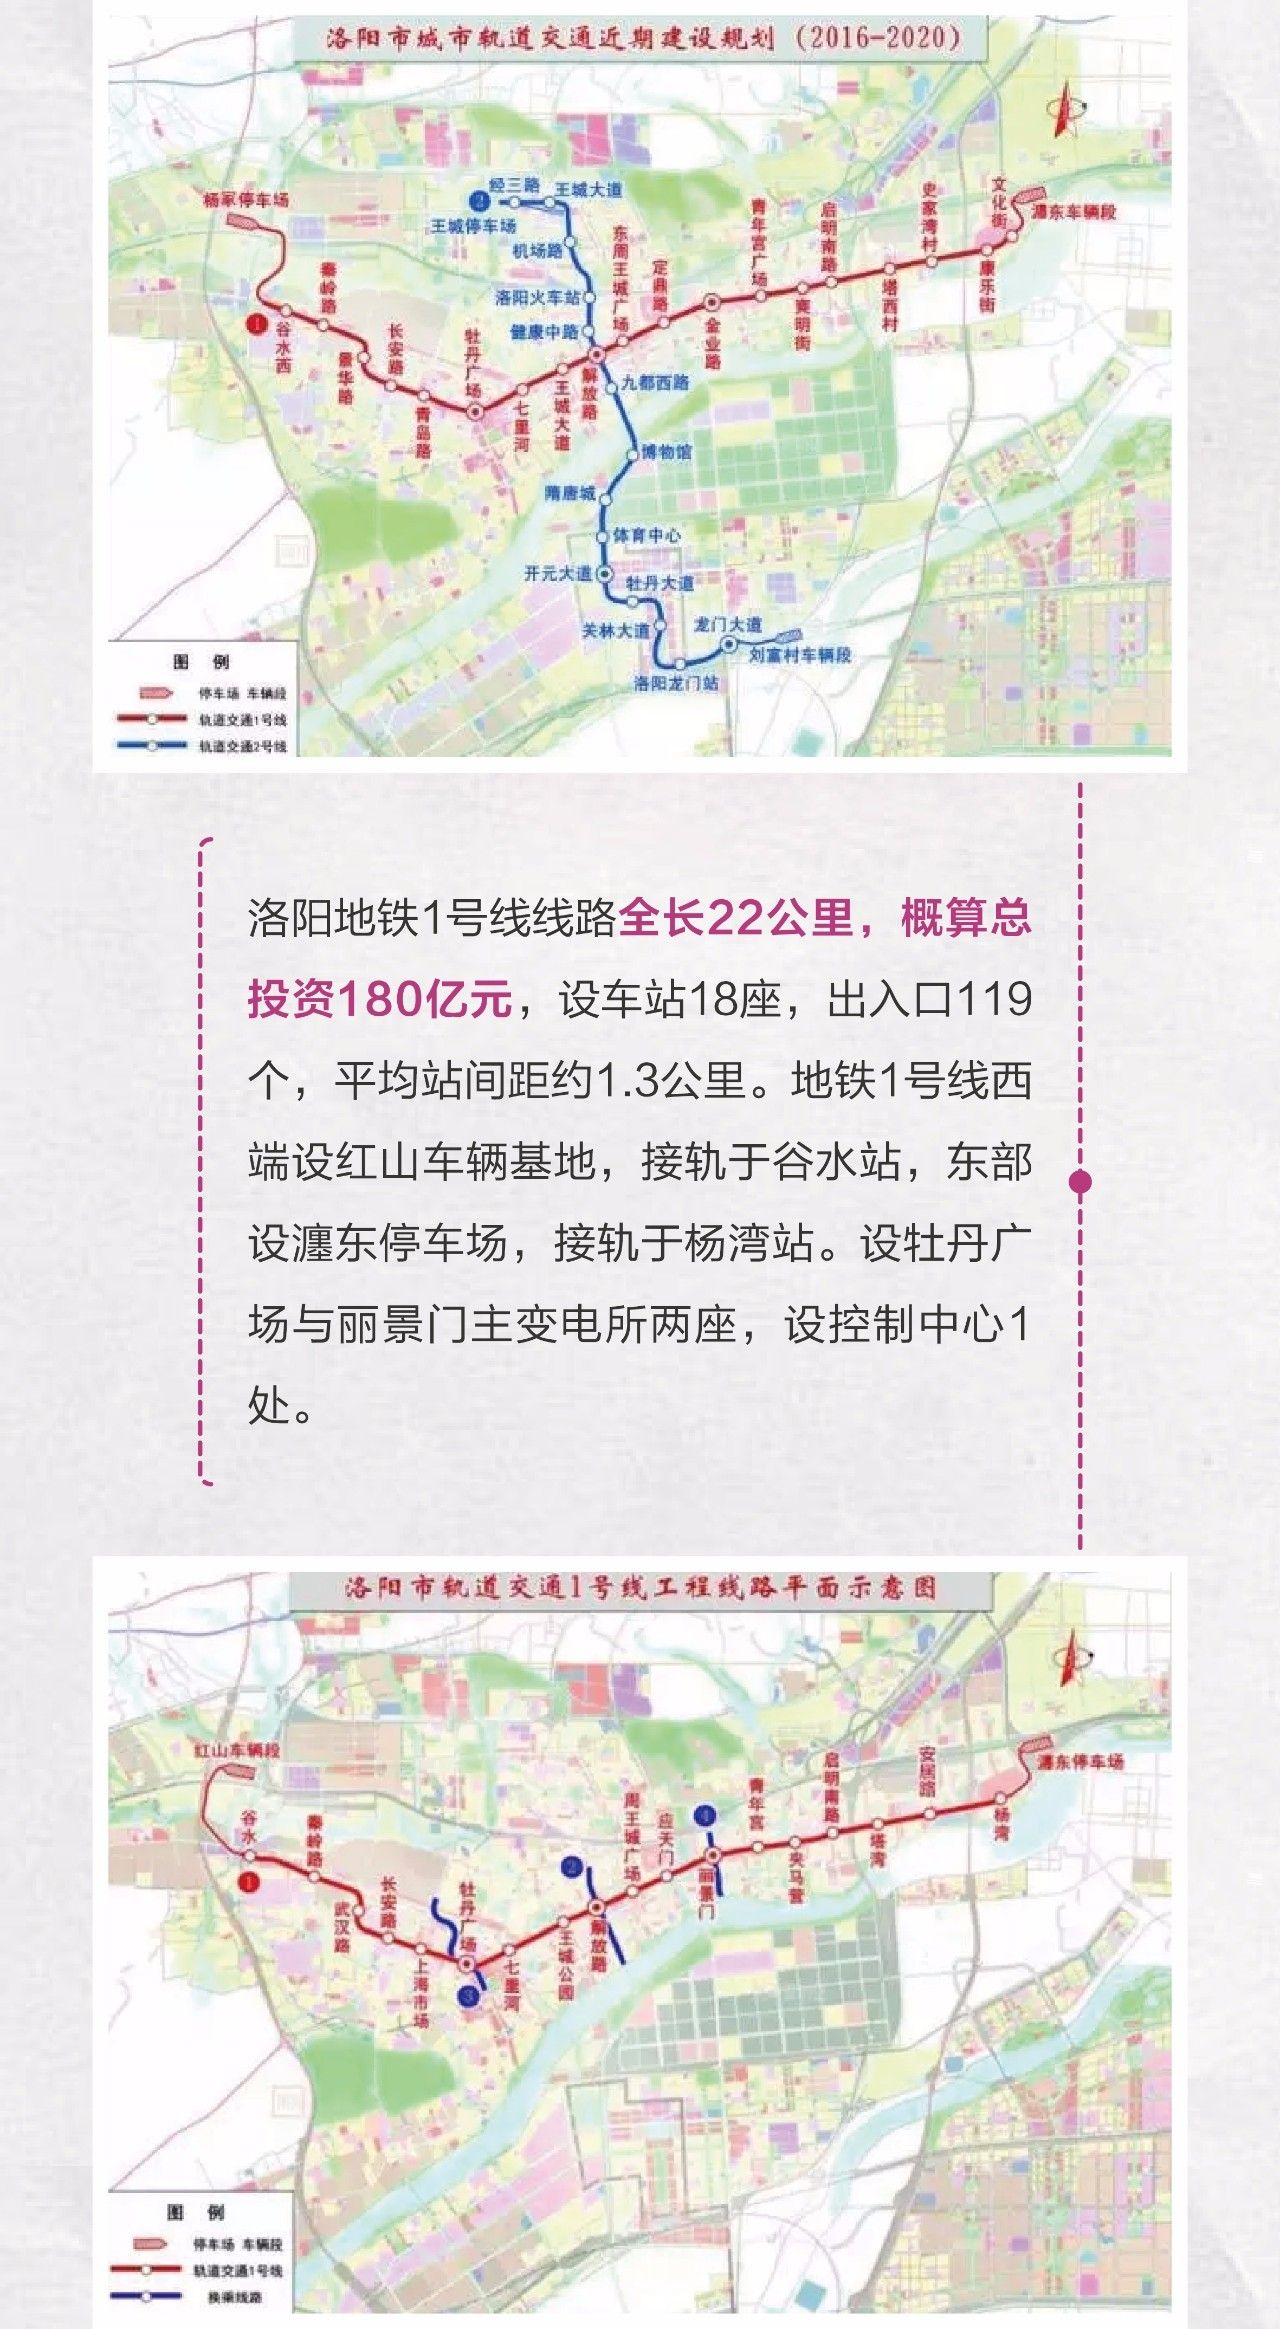 【重磅新闻】洛阳市地铁1号线正式开工,洛阳正式开启轨道交通新时代!